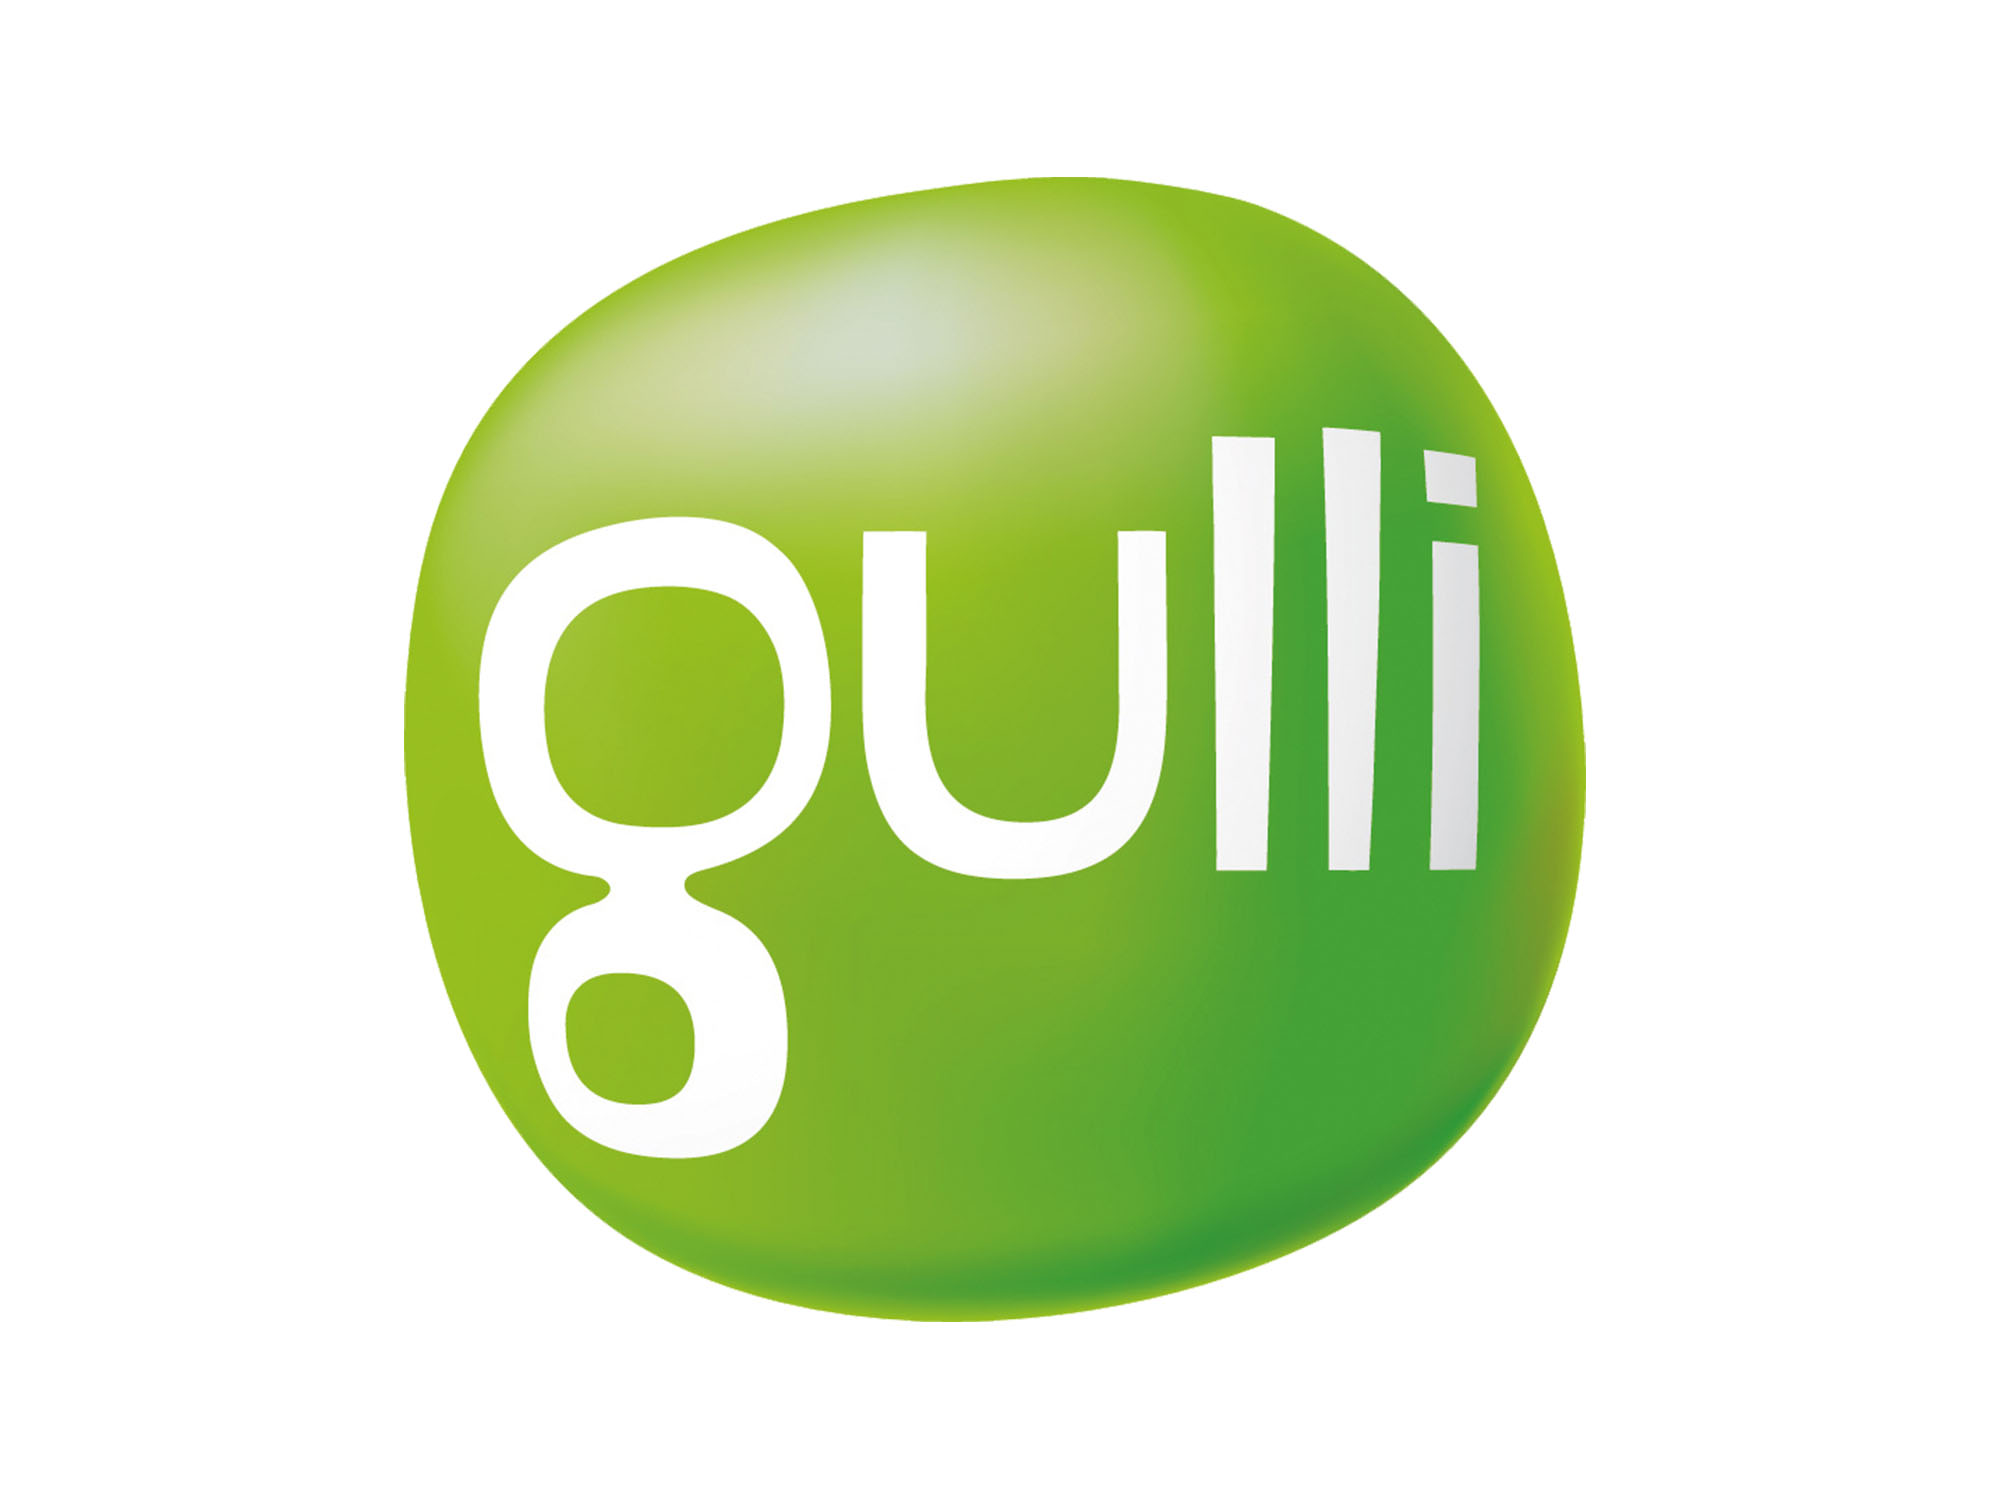 gulli-logo